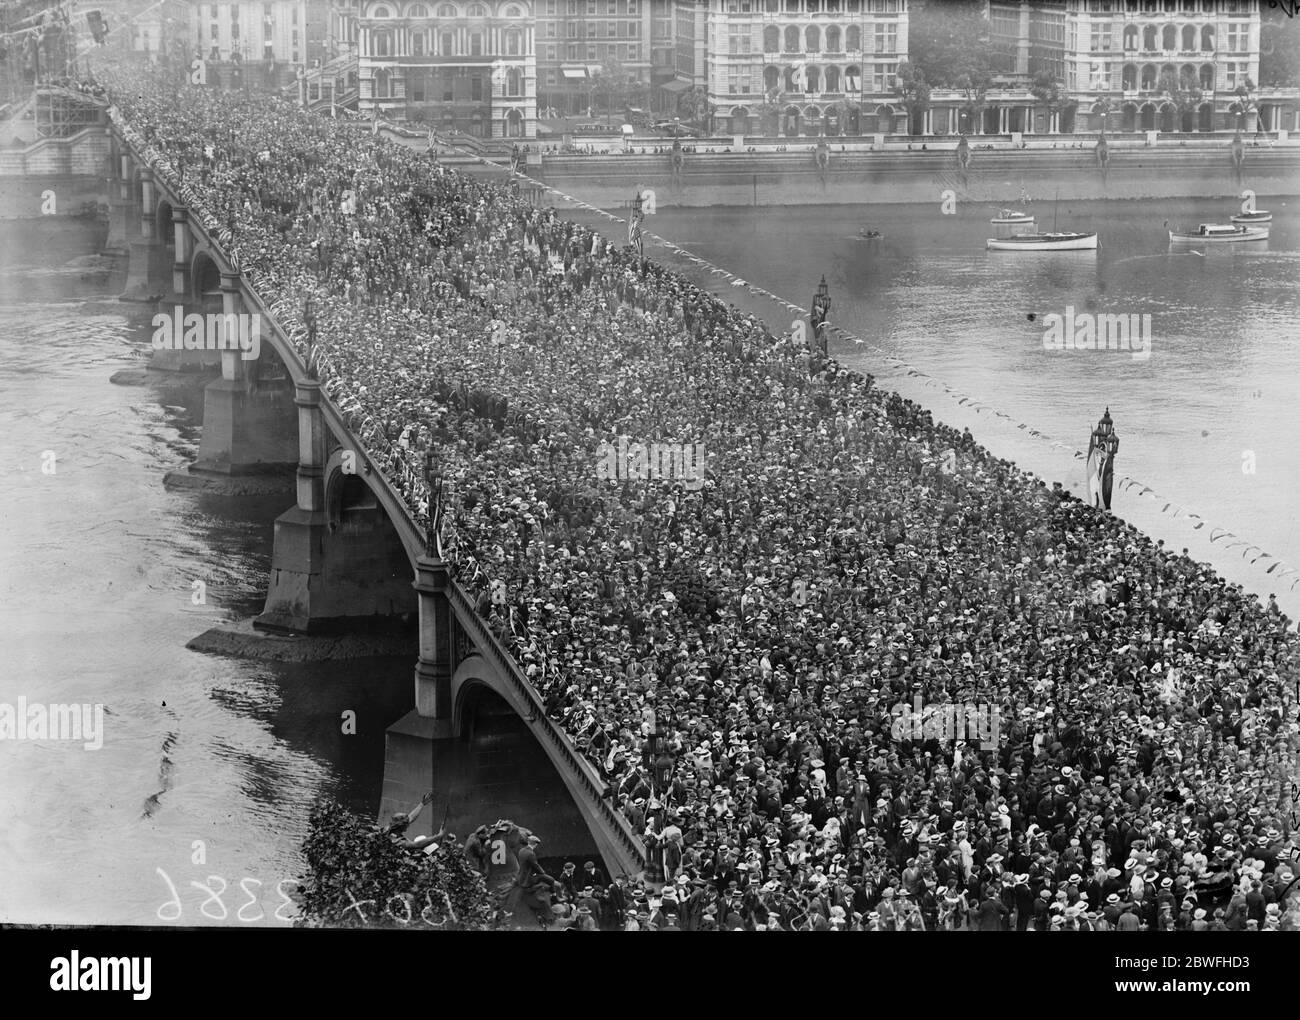 Der Große Siegeszug . Die erstaunliche Szene auf der Westminster Bridge , als die Zuschauer nach dem Passieren des marsches geschlossen wurden und eine Zeit lang so dicht an der Brücke zusammengeschlagen wurden, dass die Fußwege und Straßen am 19. Juli 1919 völlig versteckt waren Stockfoto